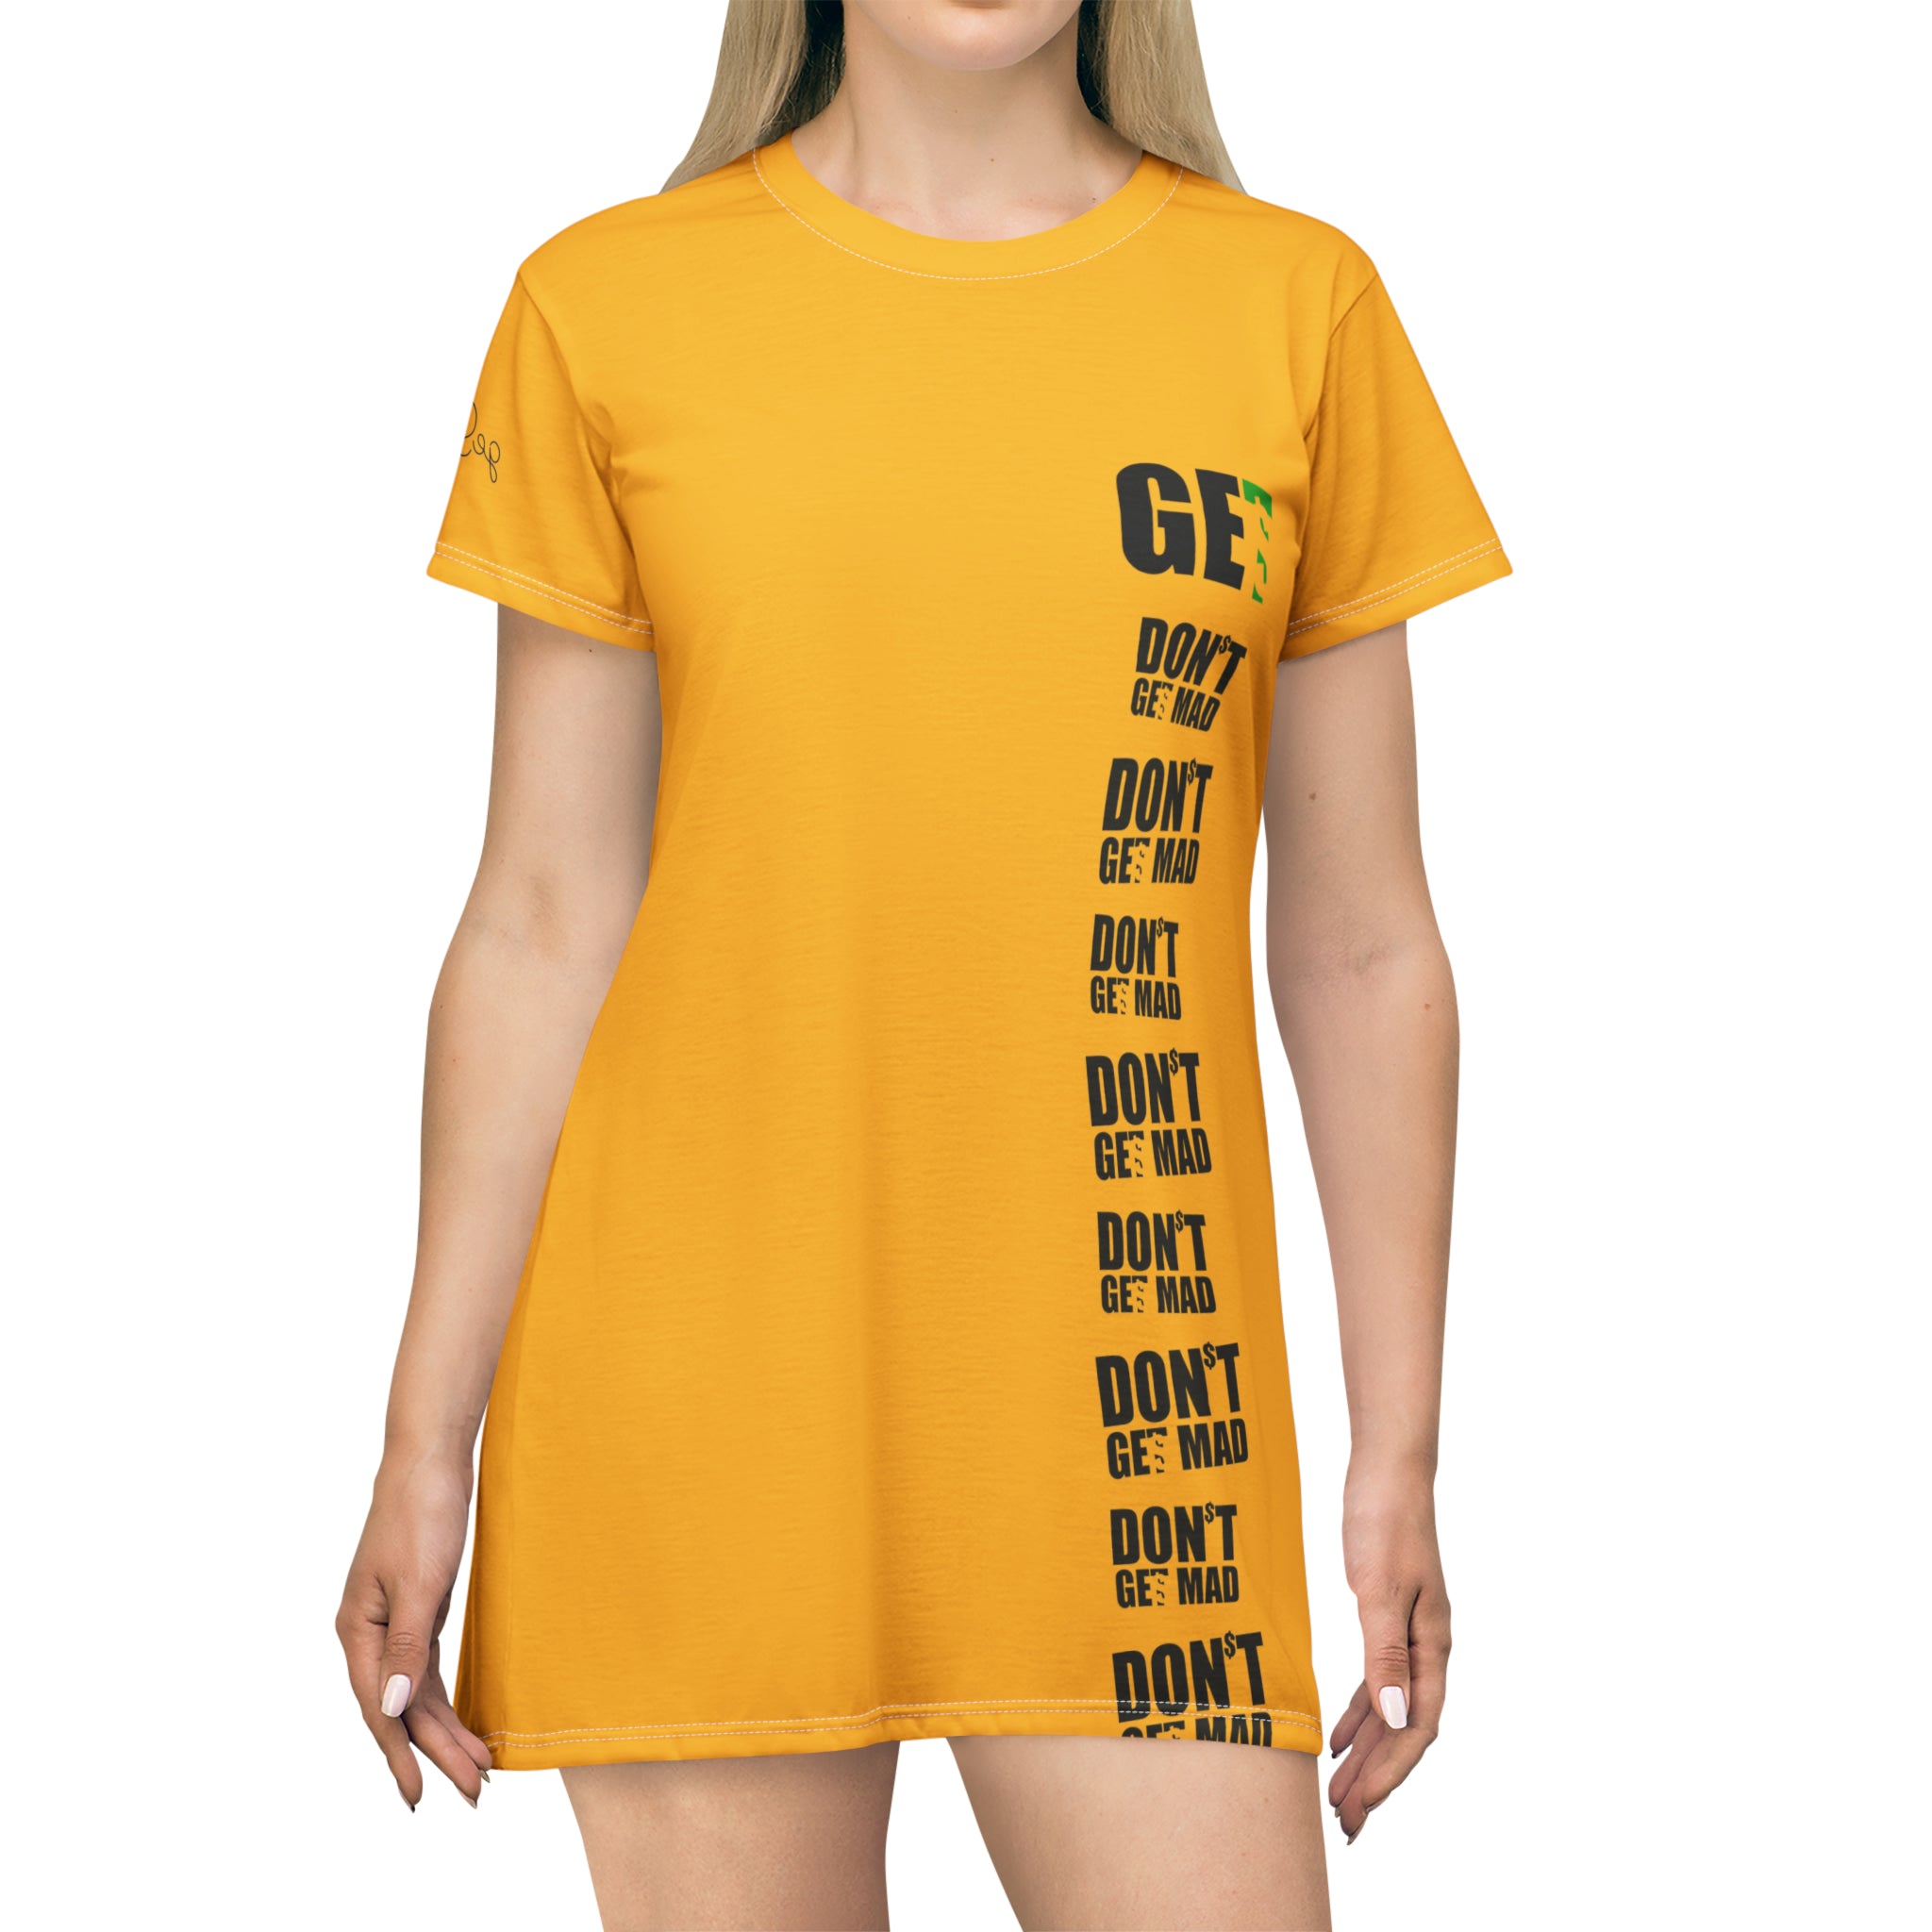 GET$ Women’s T-Shirt Dress